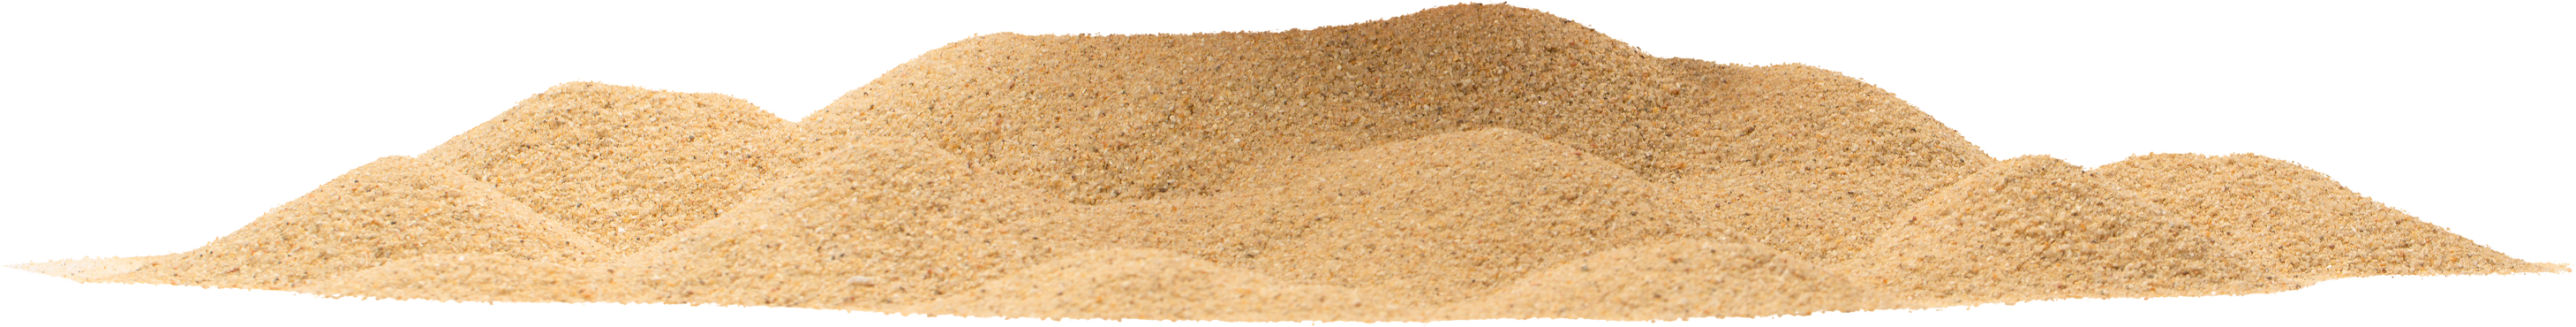 Mound of Sand Cutout 